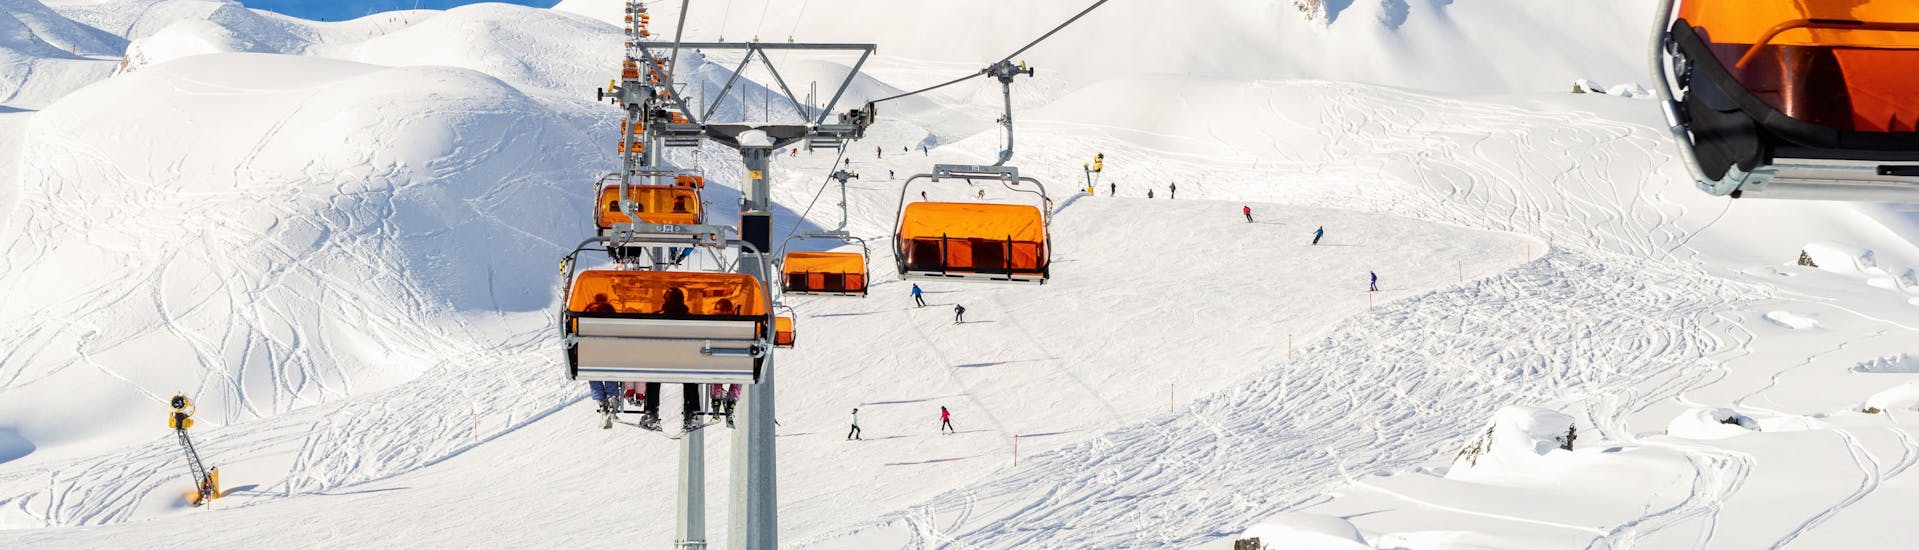 Ein Skilift und die verschneiten Pisten der Silvretta Arena Ischgl, wo eine örtliche Skischule ihre Skikurse anbietet.